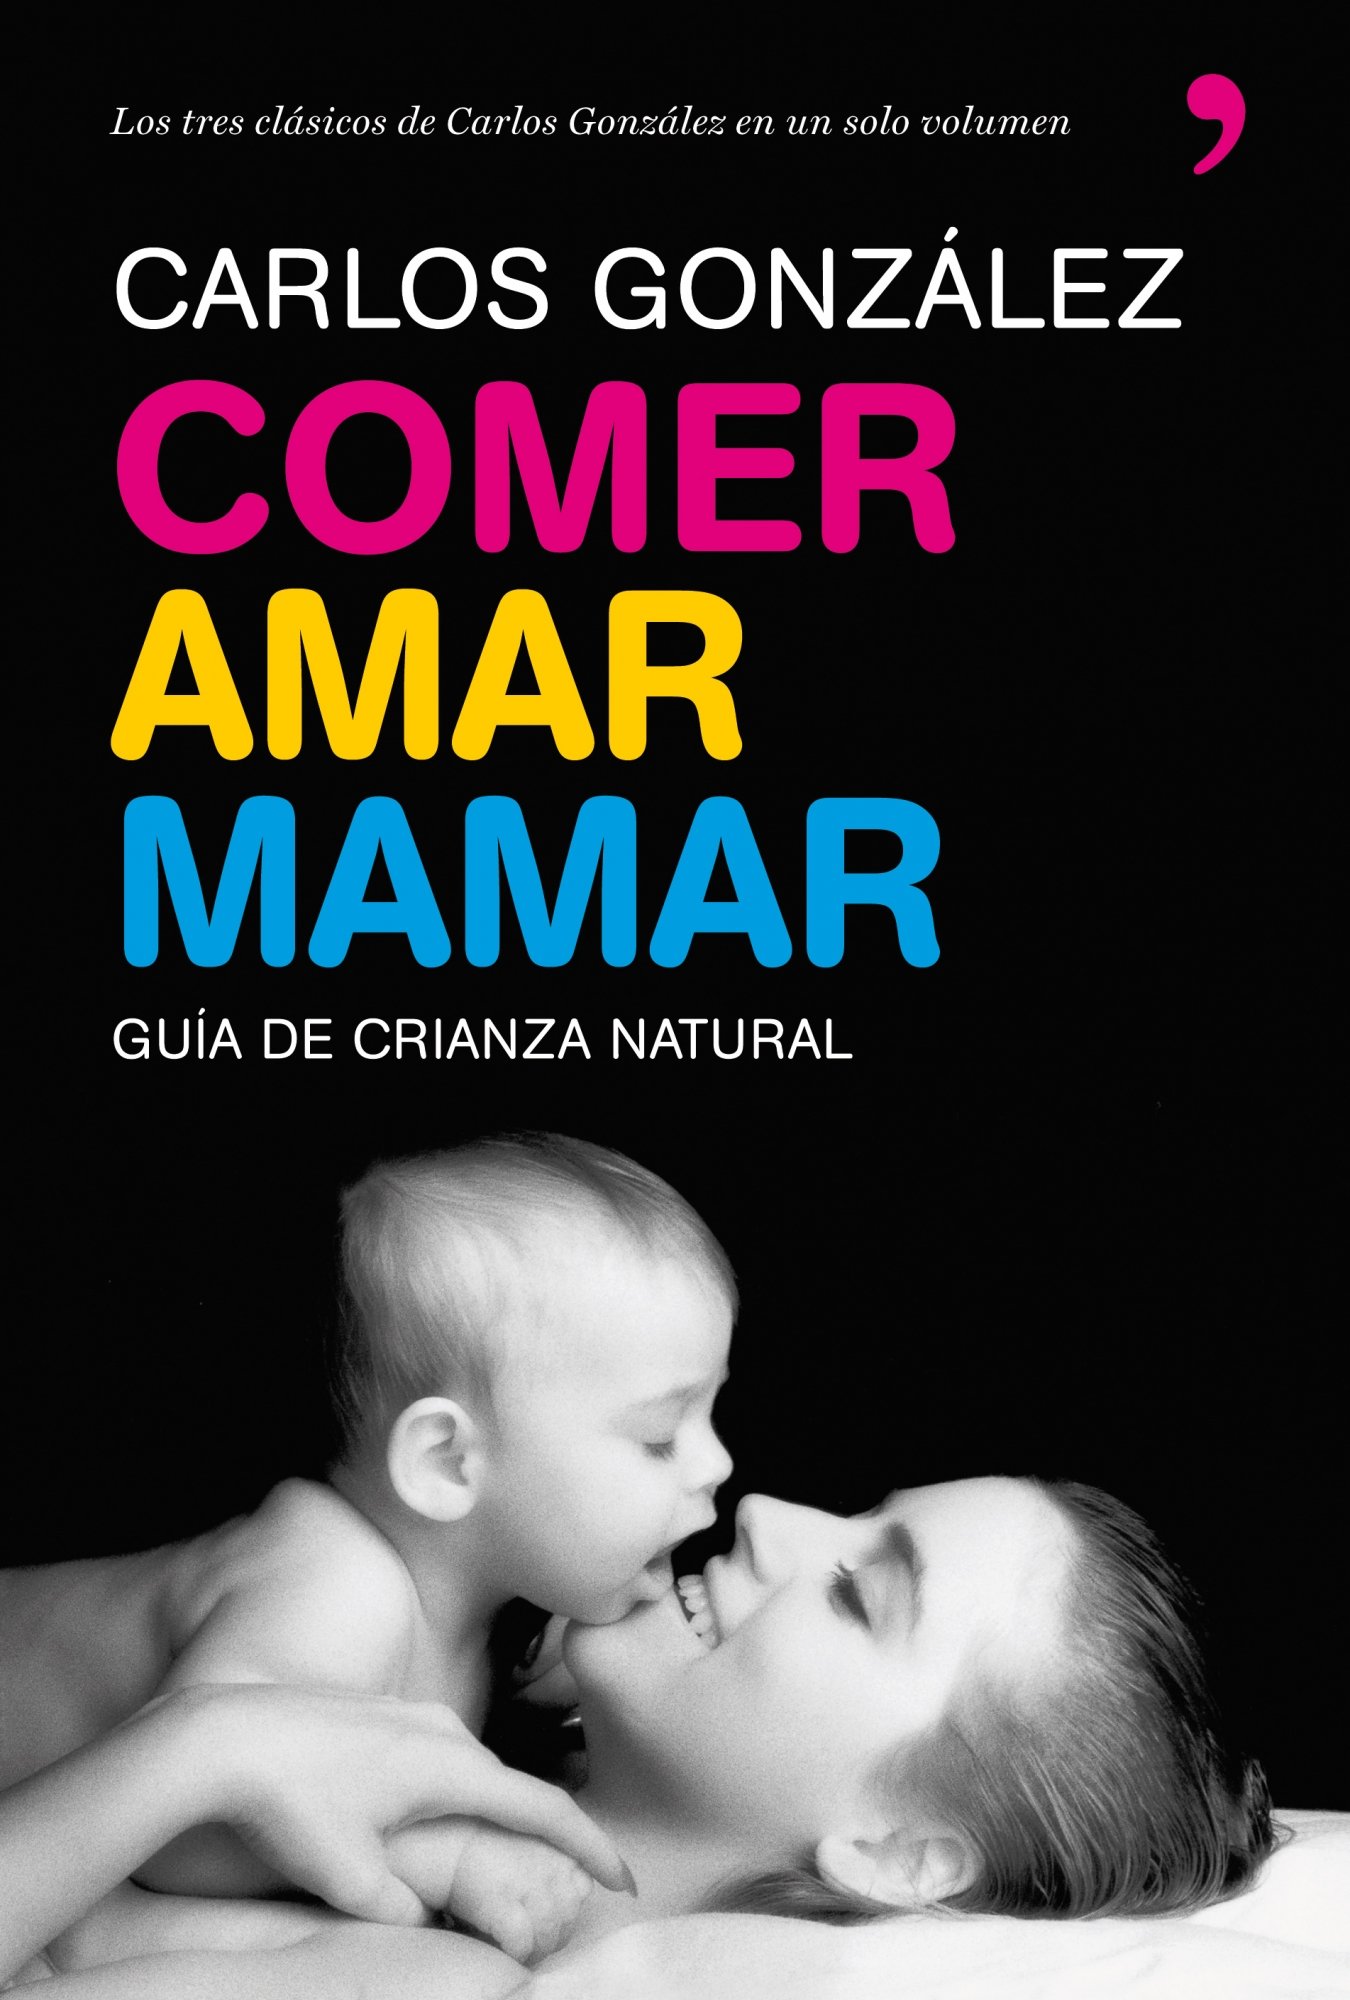 Libro Besame Mucho por el pediatra CARLOS GONZALEZ 